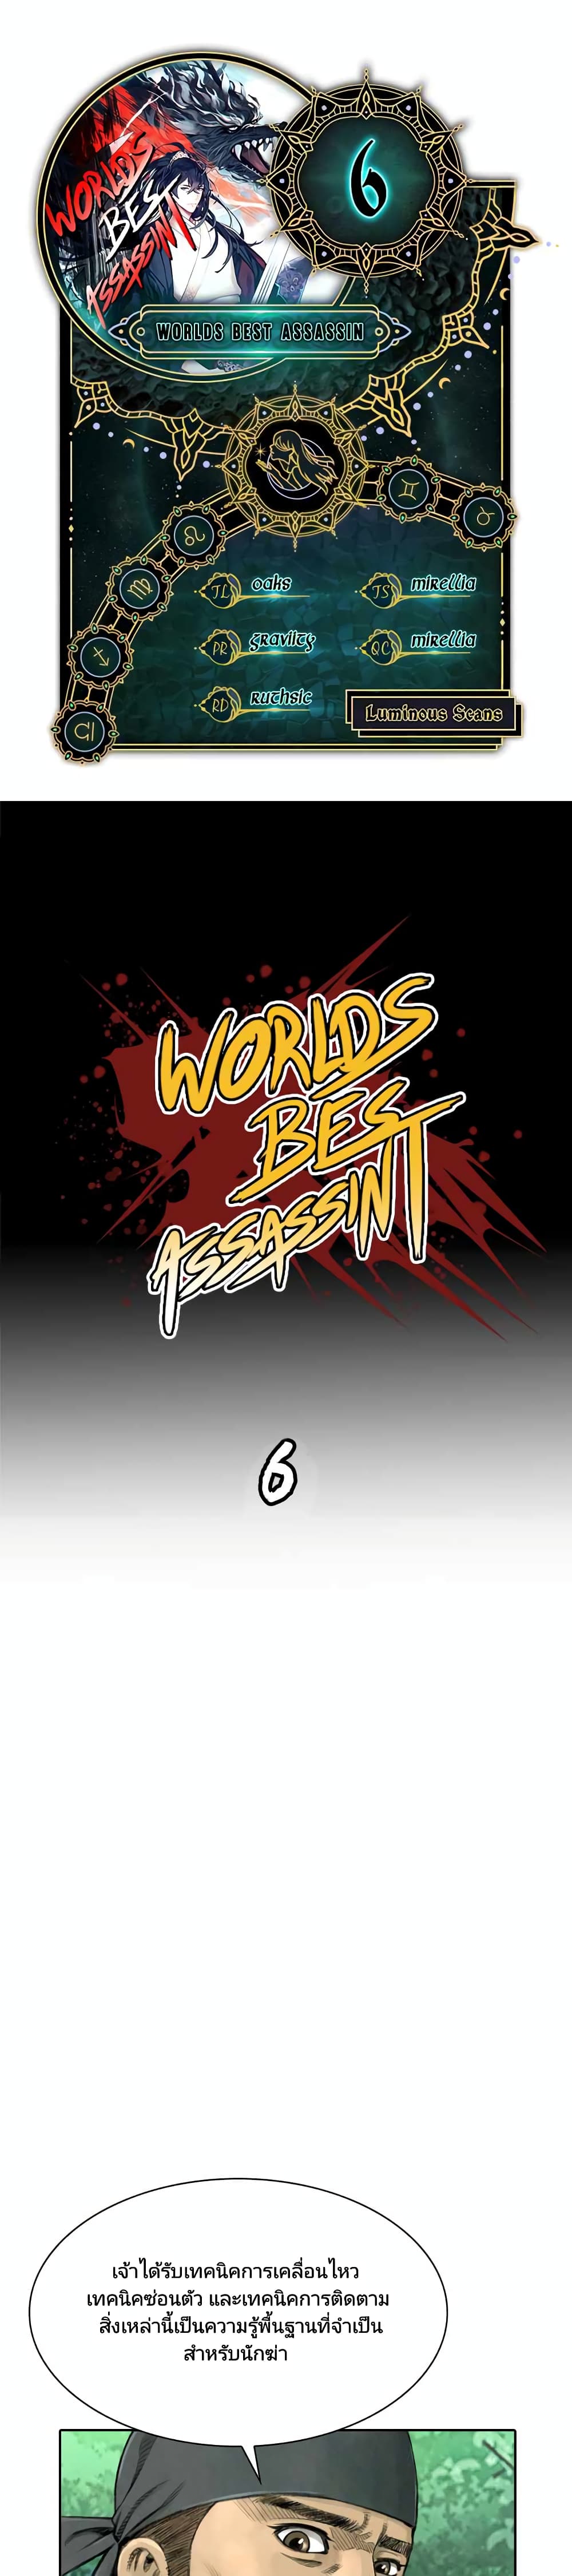 Worlds Best Assassin 6-6